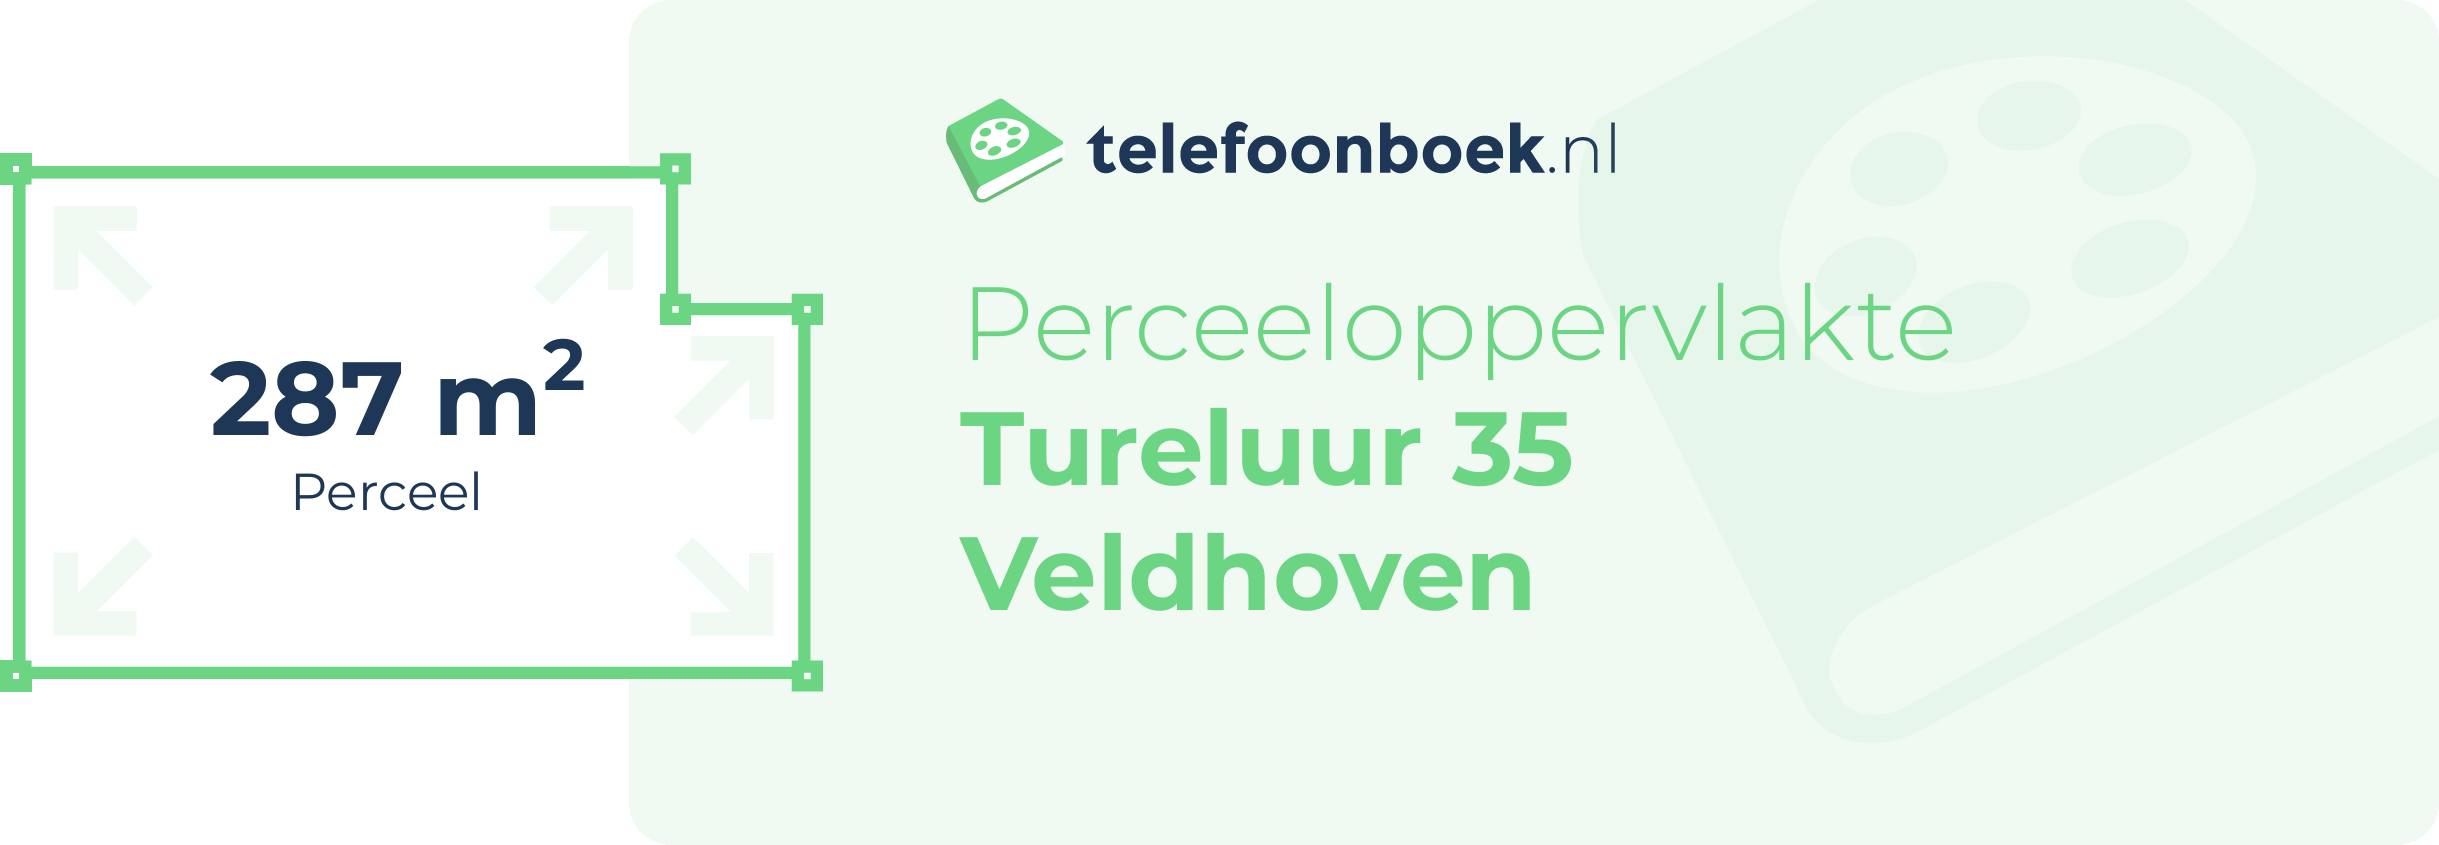 Perceeloppervlakte Tureluur 35 Veldhoven